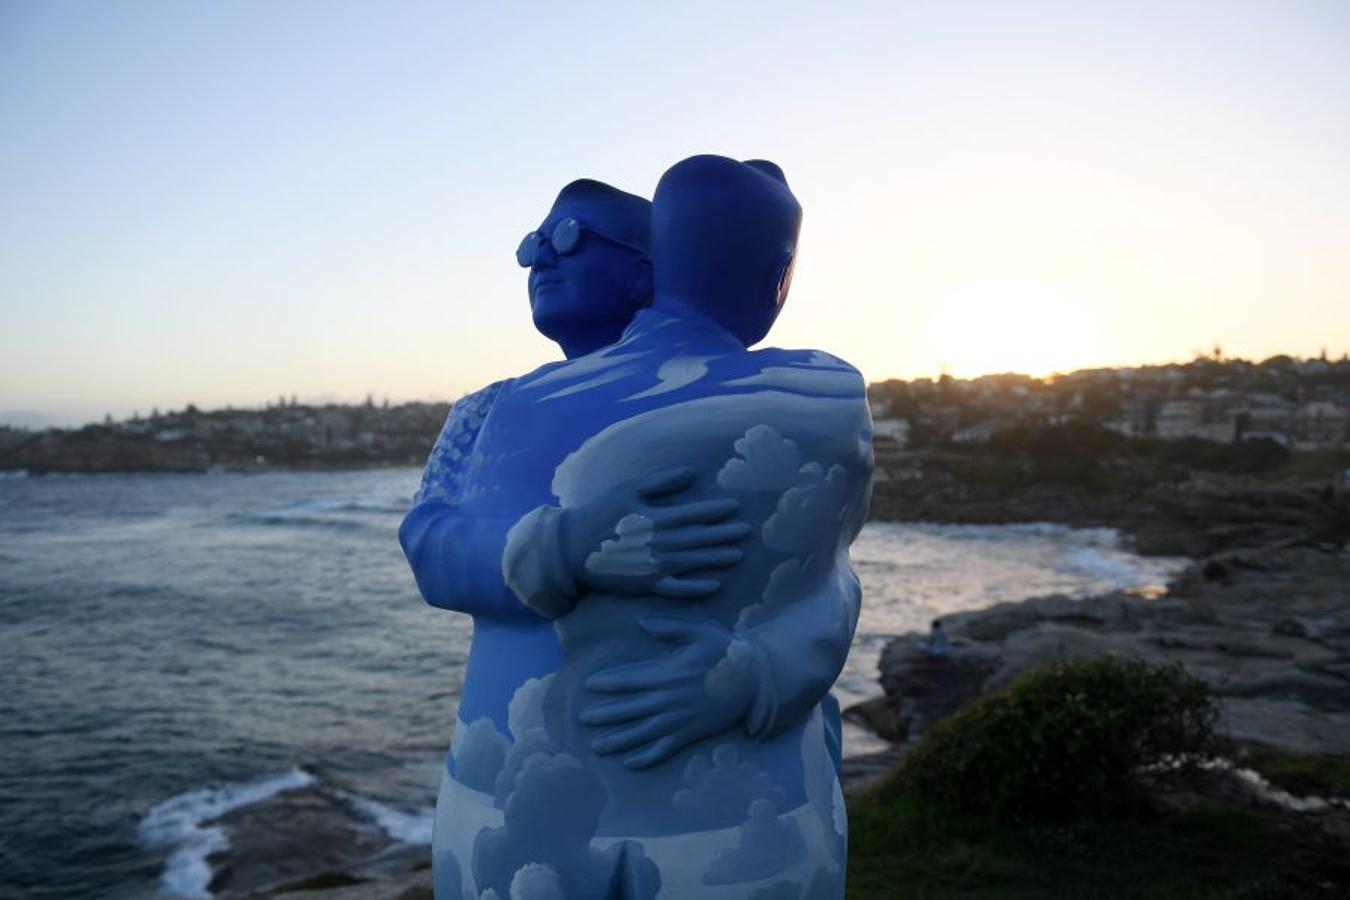 Artistas de todo el mundo exponen sus obras en 'Sculpture by de Sea', la mayor muestra de esculturas al aire libre a nivel mundial